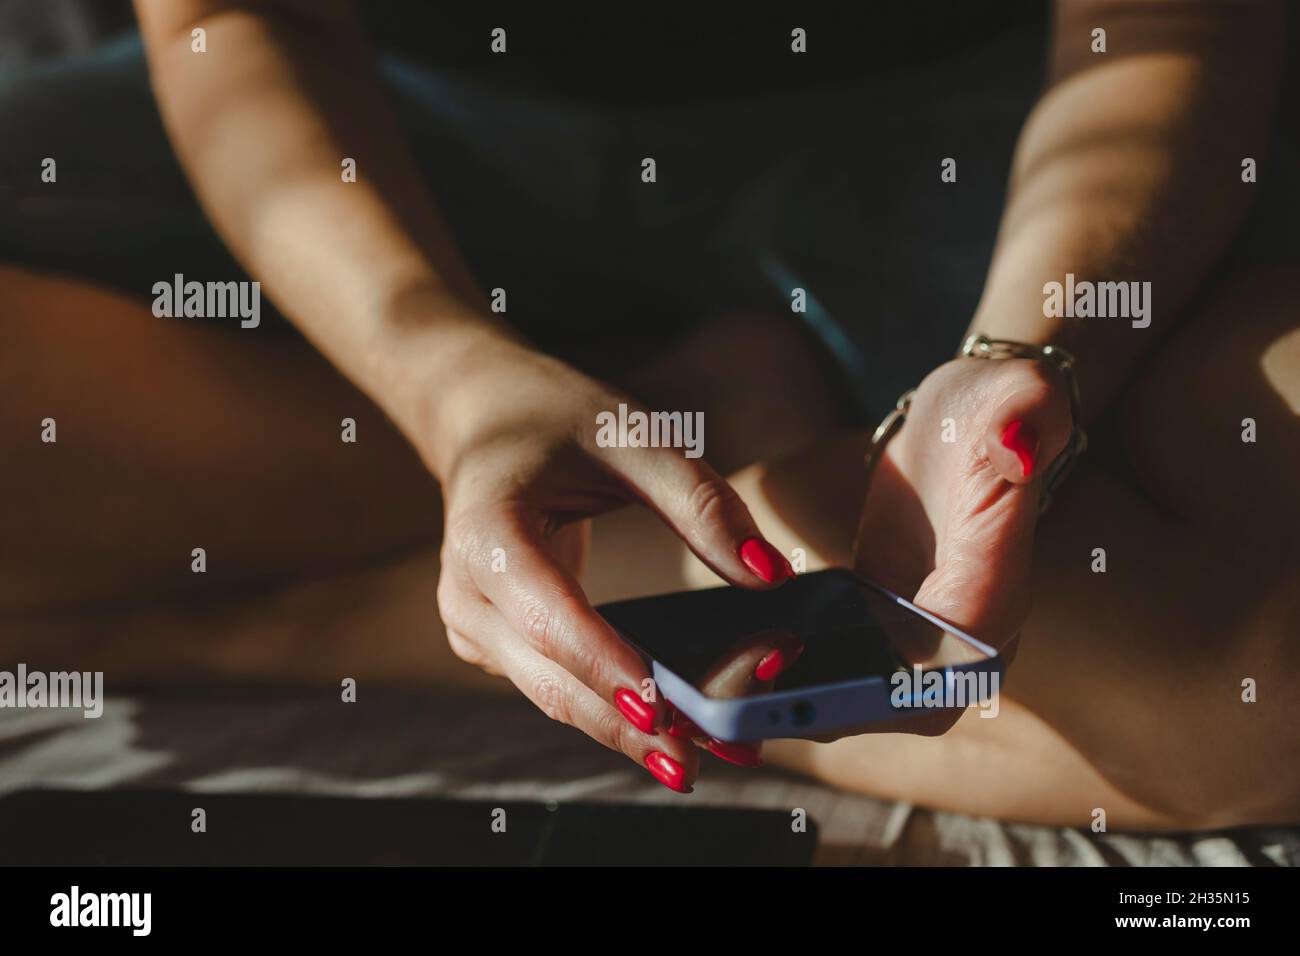 Femme textant à l'aide d'un téléphone portable, mains avec vernis à ongles rouge manucure dans le cadre. Achats en ligne. Banque D'Images